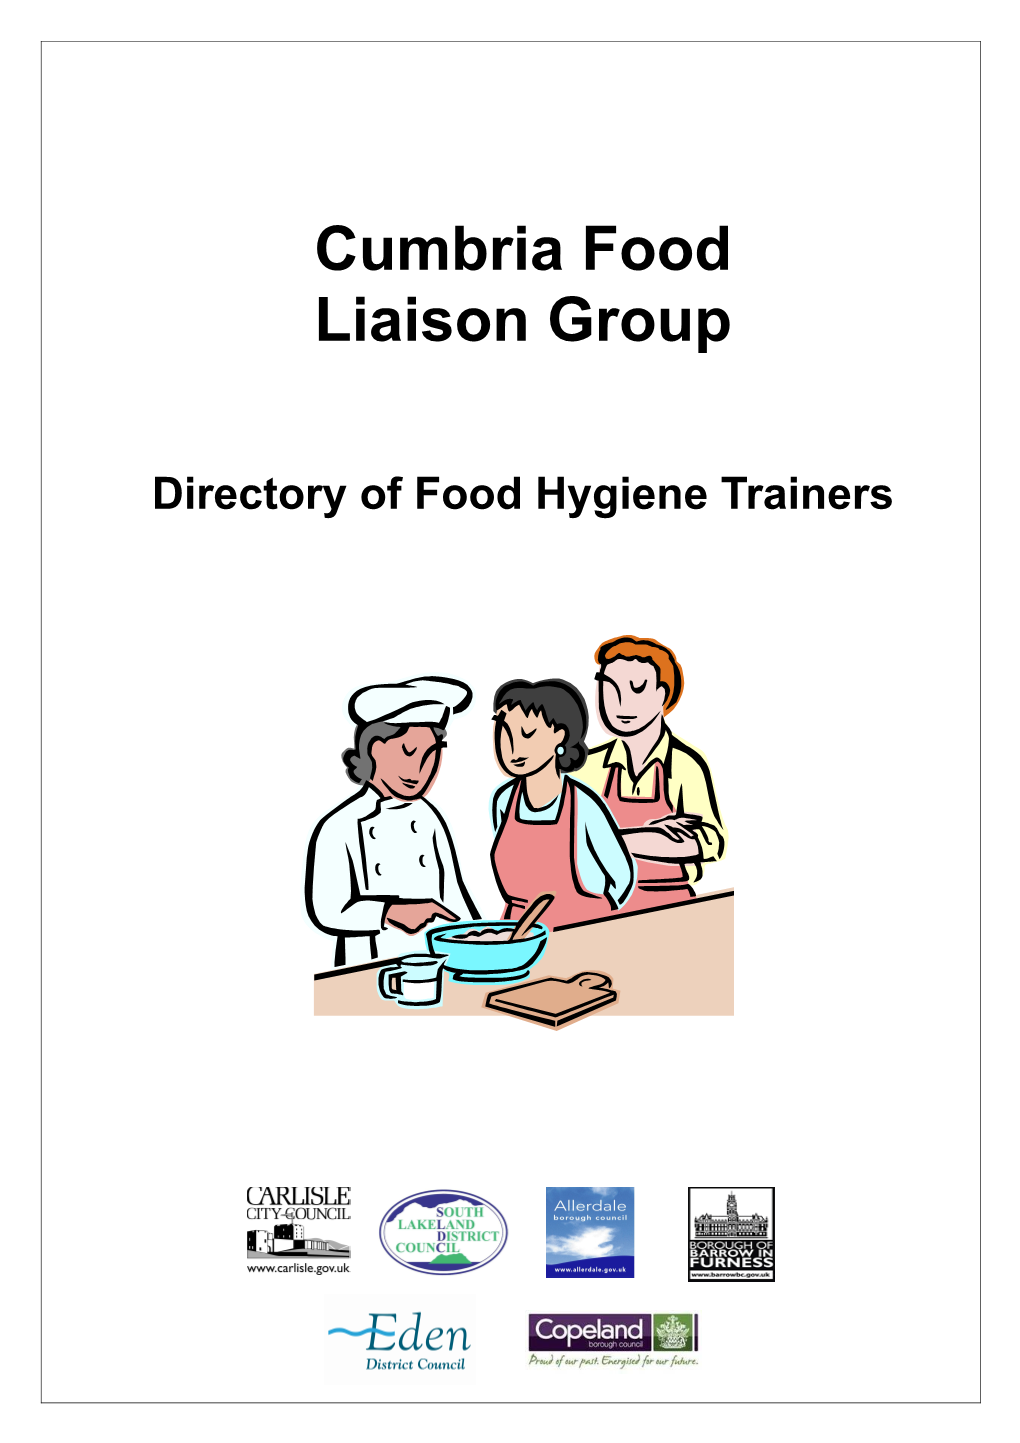 Cumbria Food Liaison Group